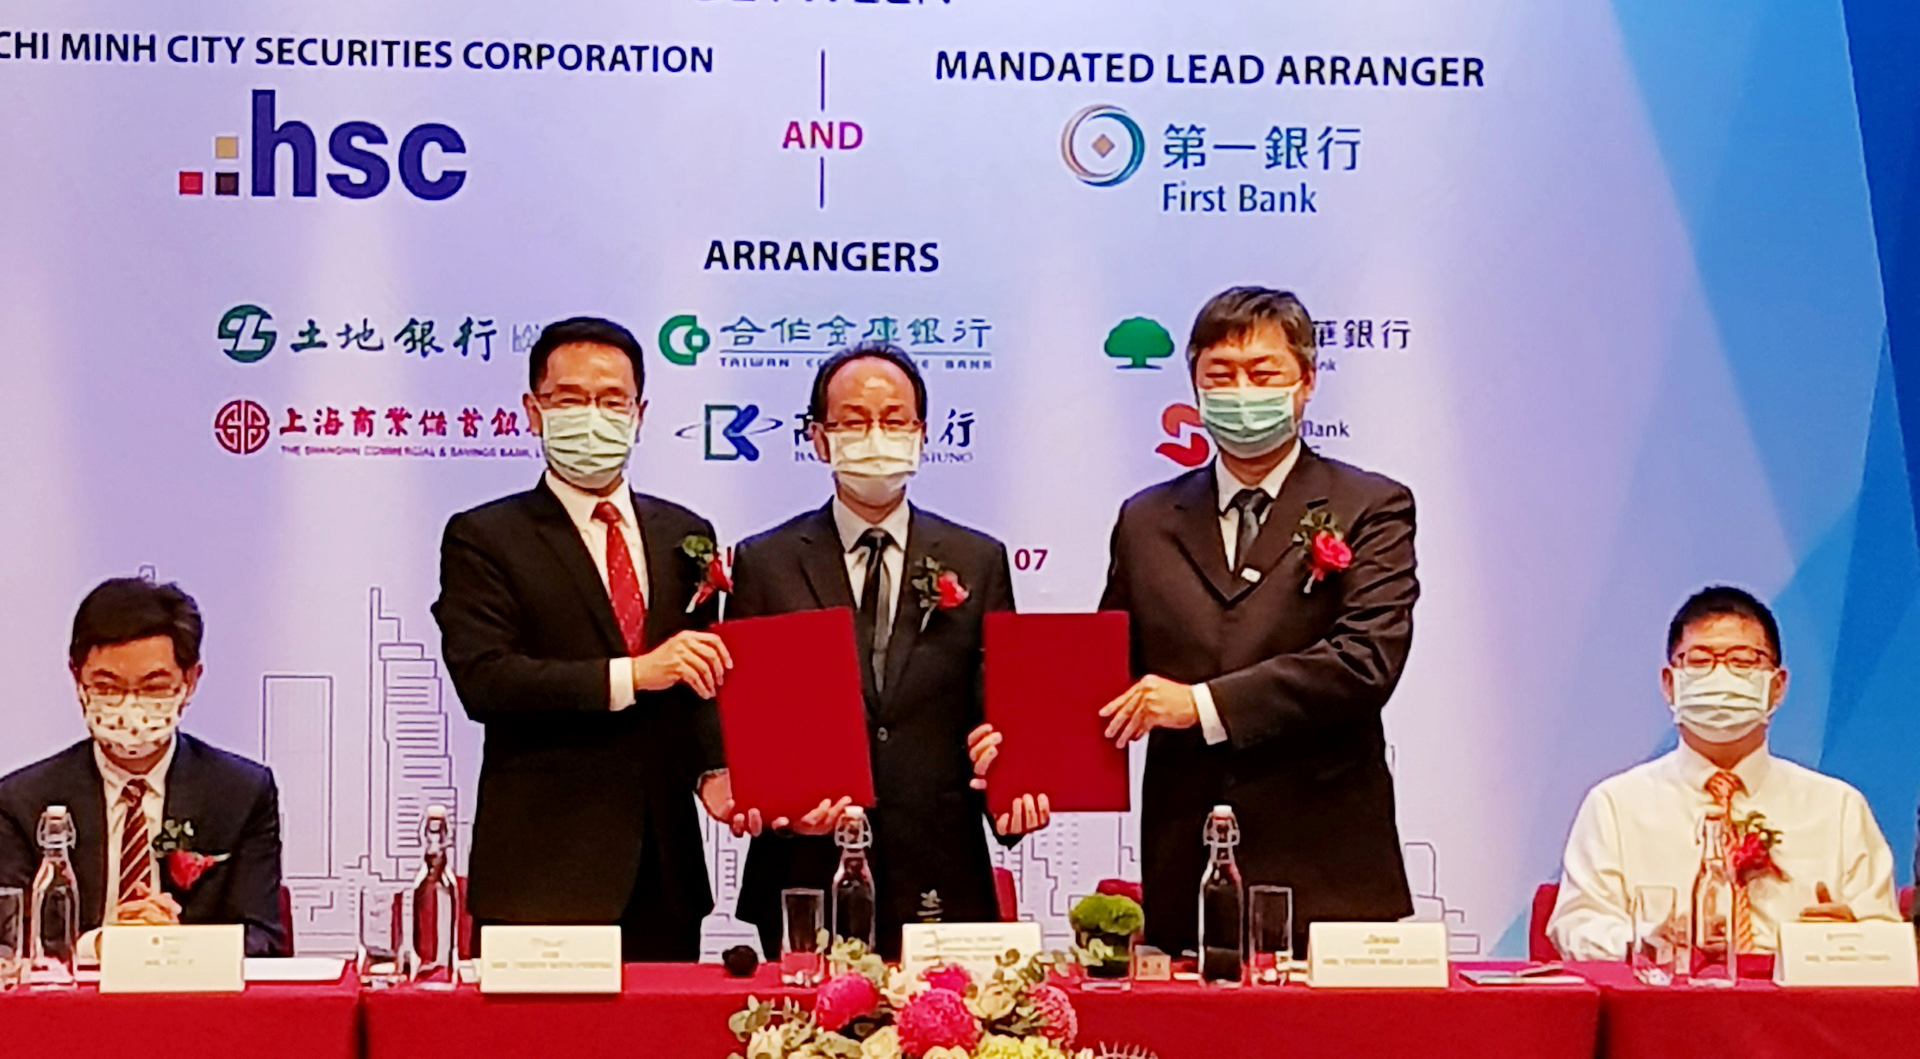 HSC nhận khoản vay hợp vốn 44 triệu USD từ nhóm các định chế tài chính Đài Loan